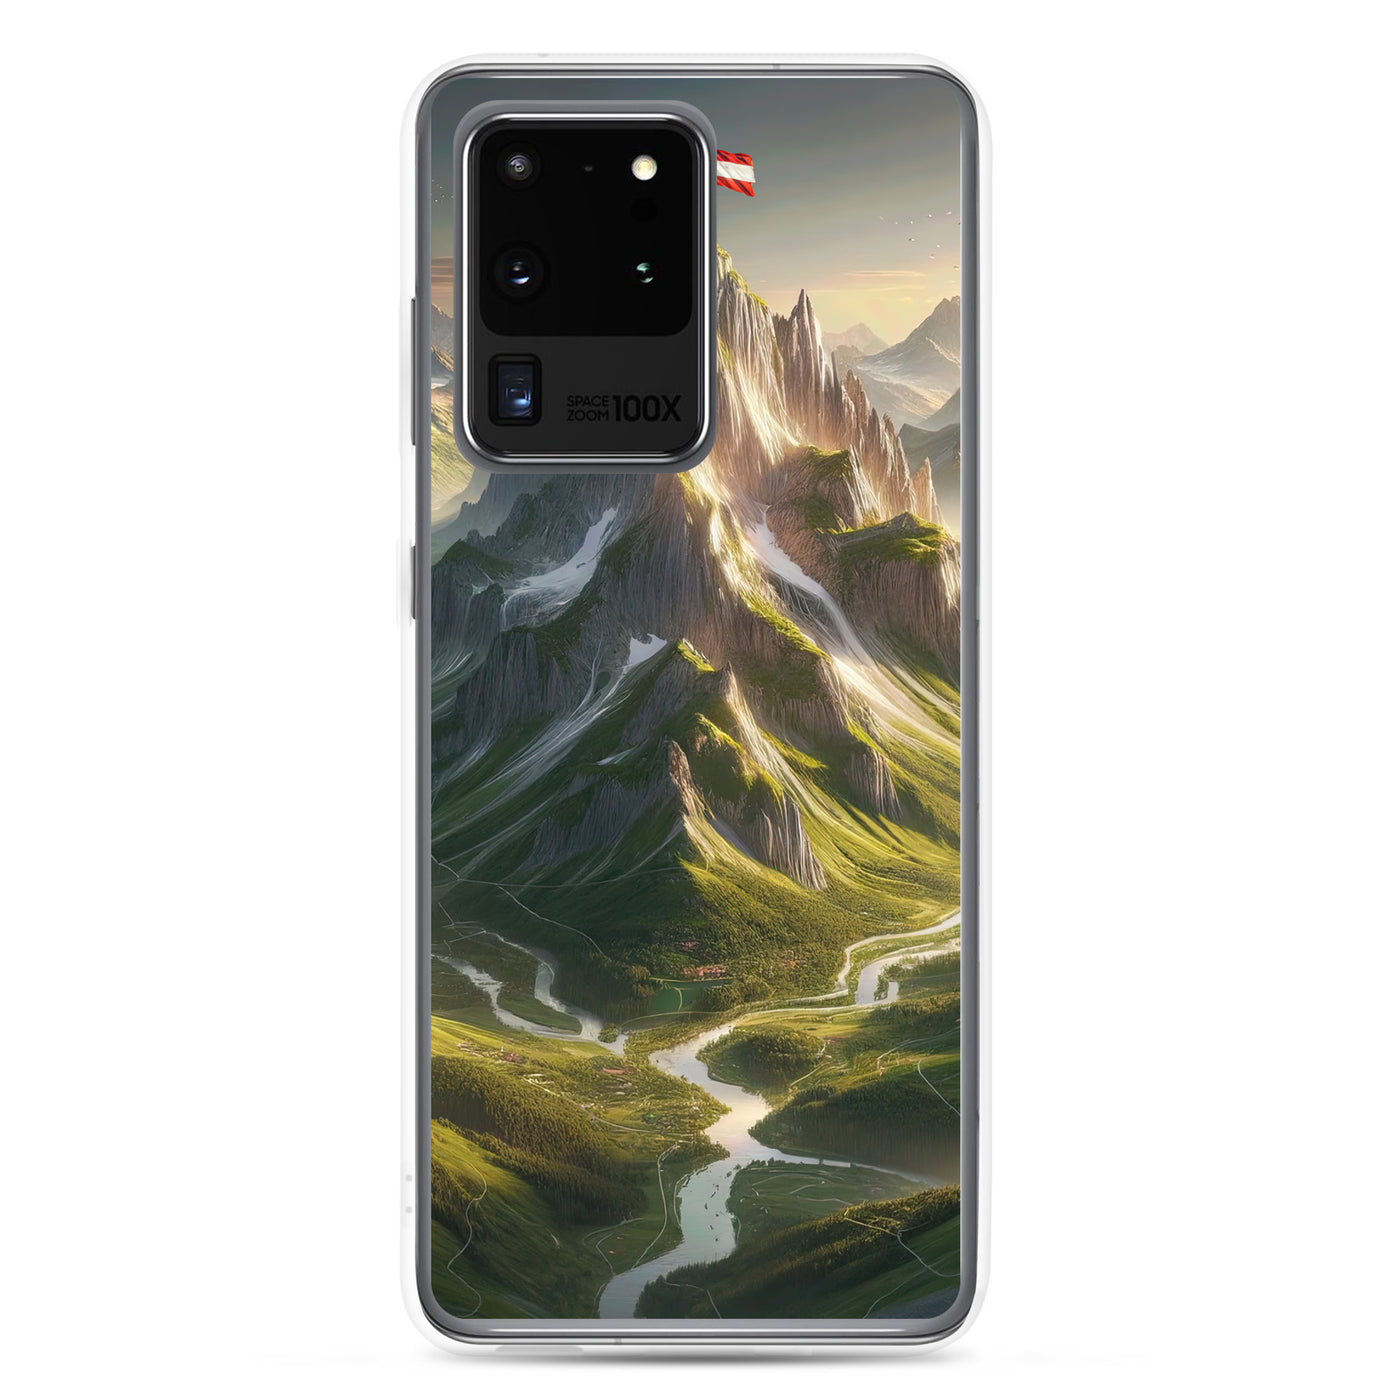 Fotorealistisches Bild der Alpen mit österreichischer Flagge, scharfen Gipfeln und grünen Tälern - Samsung Schutzhülle (durchsichtig) berge xxx yyy zzz Samsung Galaxy S20 Ultra